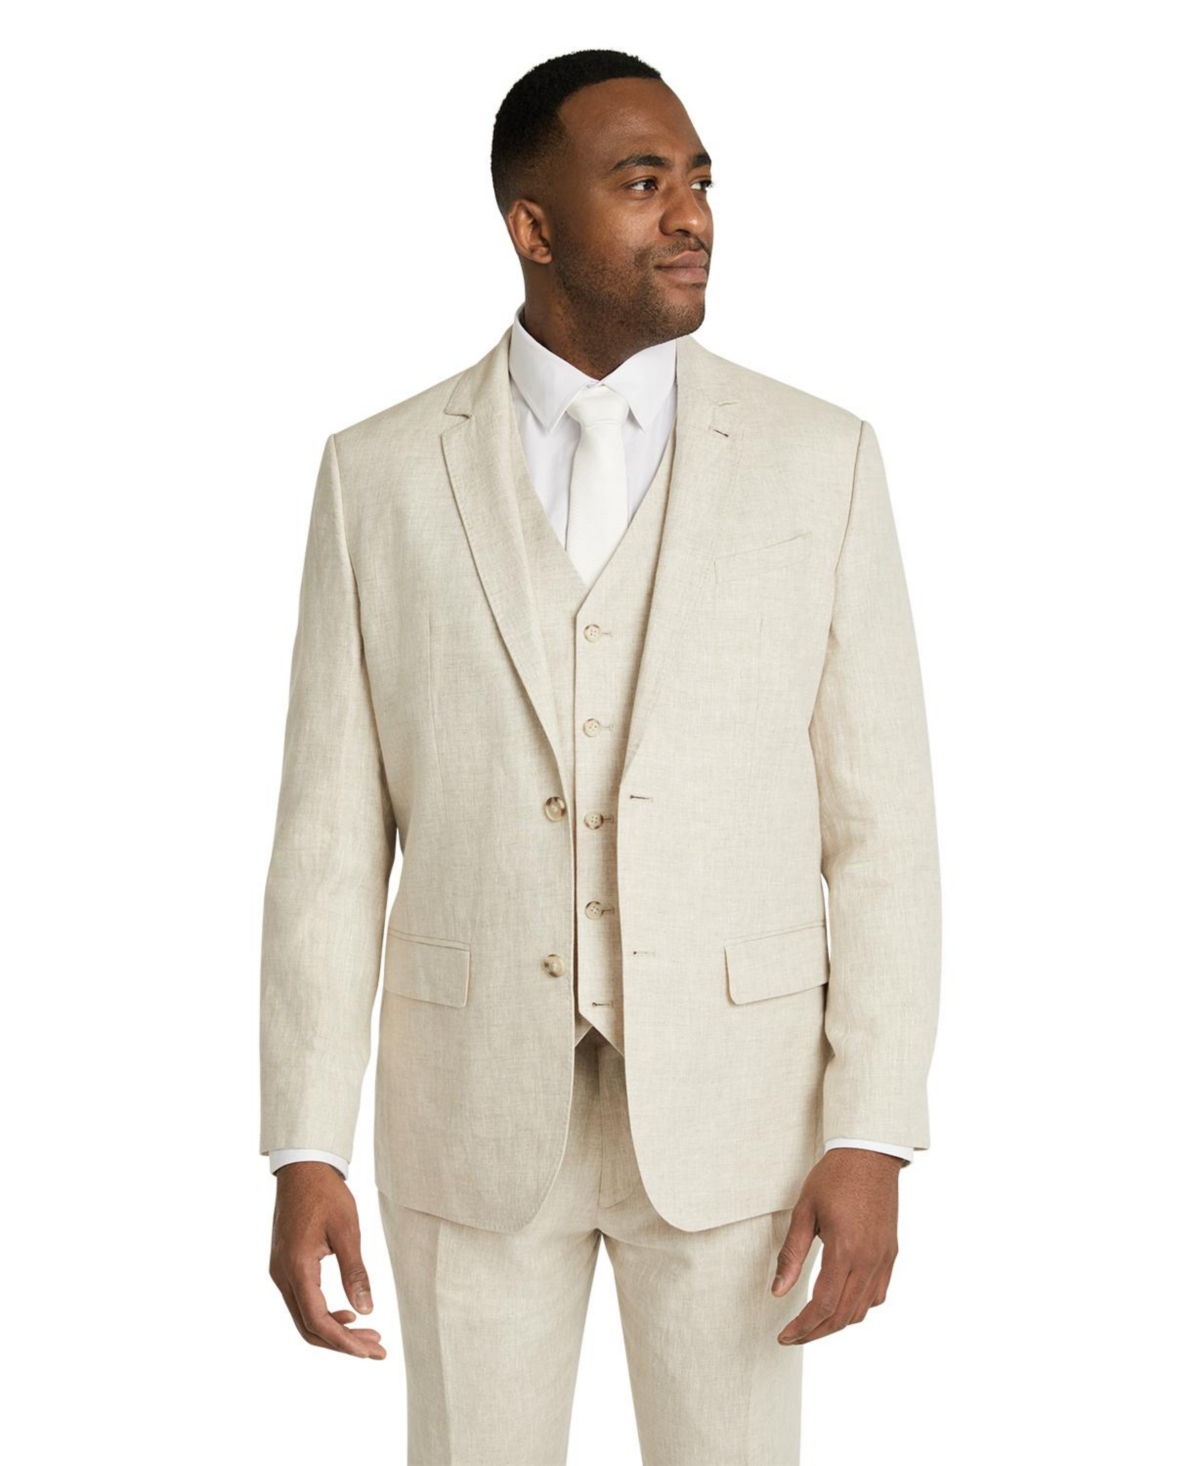 Johnny Big Men's Hems worth Linen Suit Jacket Big & Tall - Natural